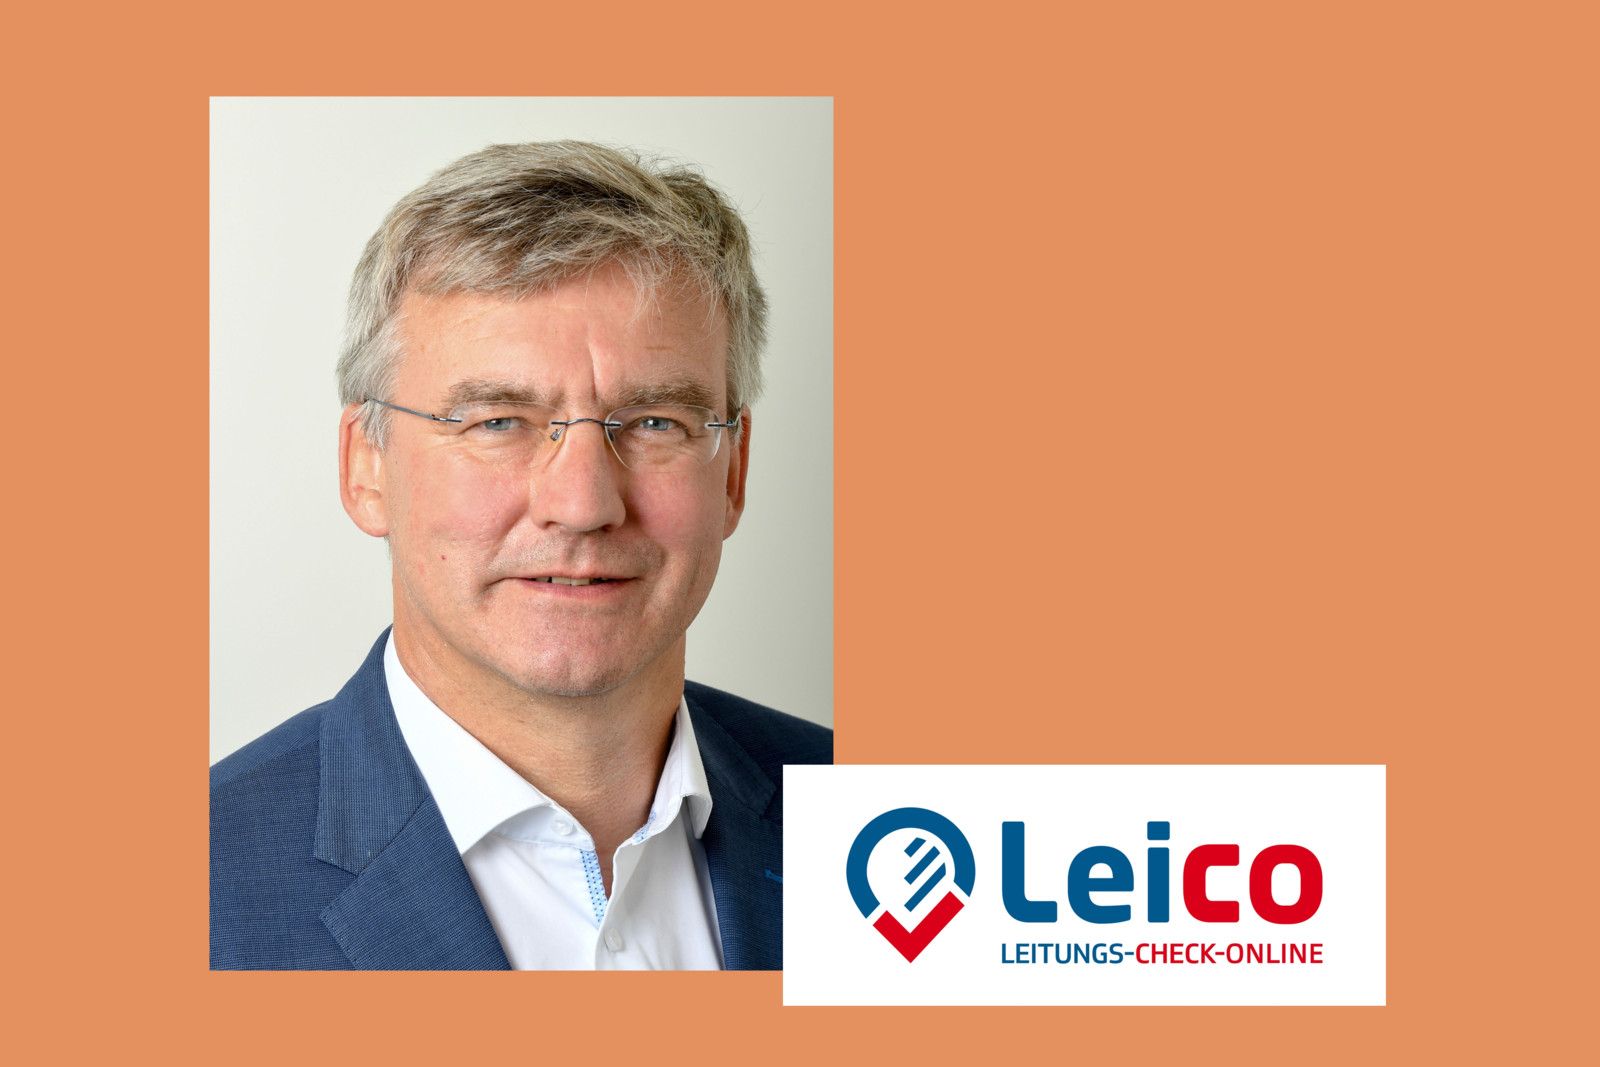 „Wir wollen mit neuem Namen und neuer Marke unsere führende Position insbesondere im gesamtdeutschen Umfeld noch deutlicher und nachdrücklicher bewusst und bekannt machen“, so infrest-Geschäftsführer Jürgen Besler zum geplanten Launch von Leico.